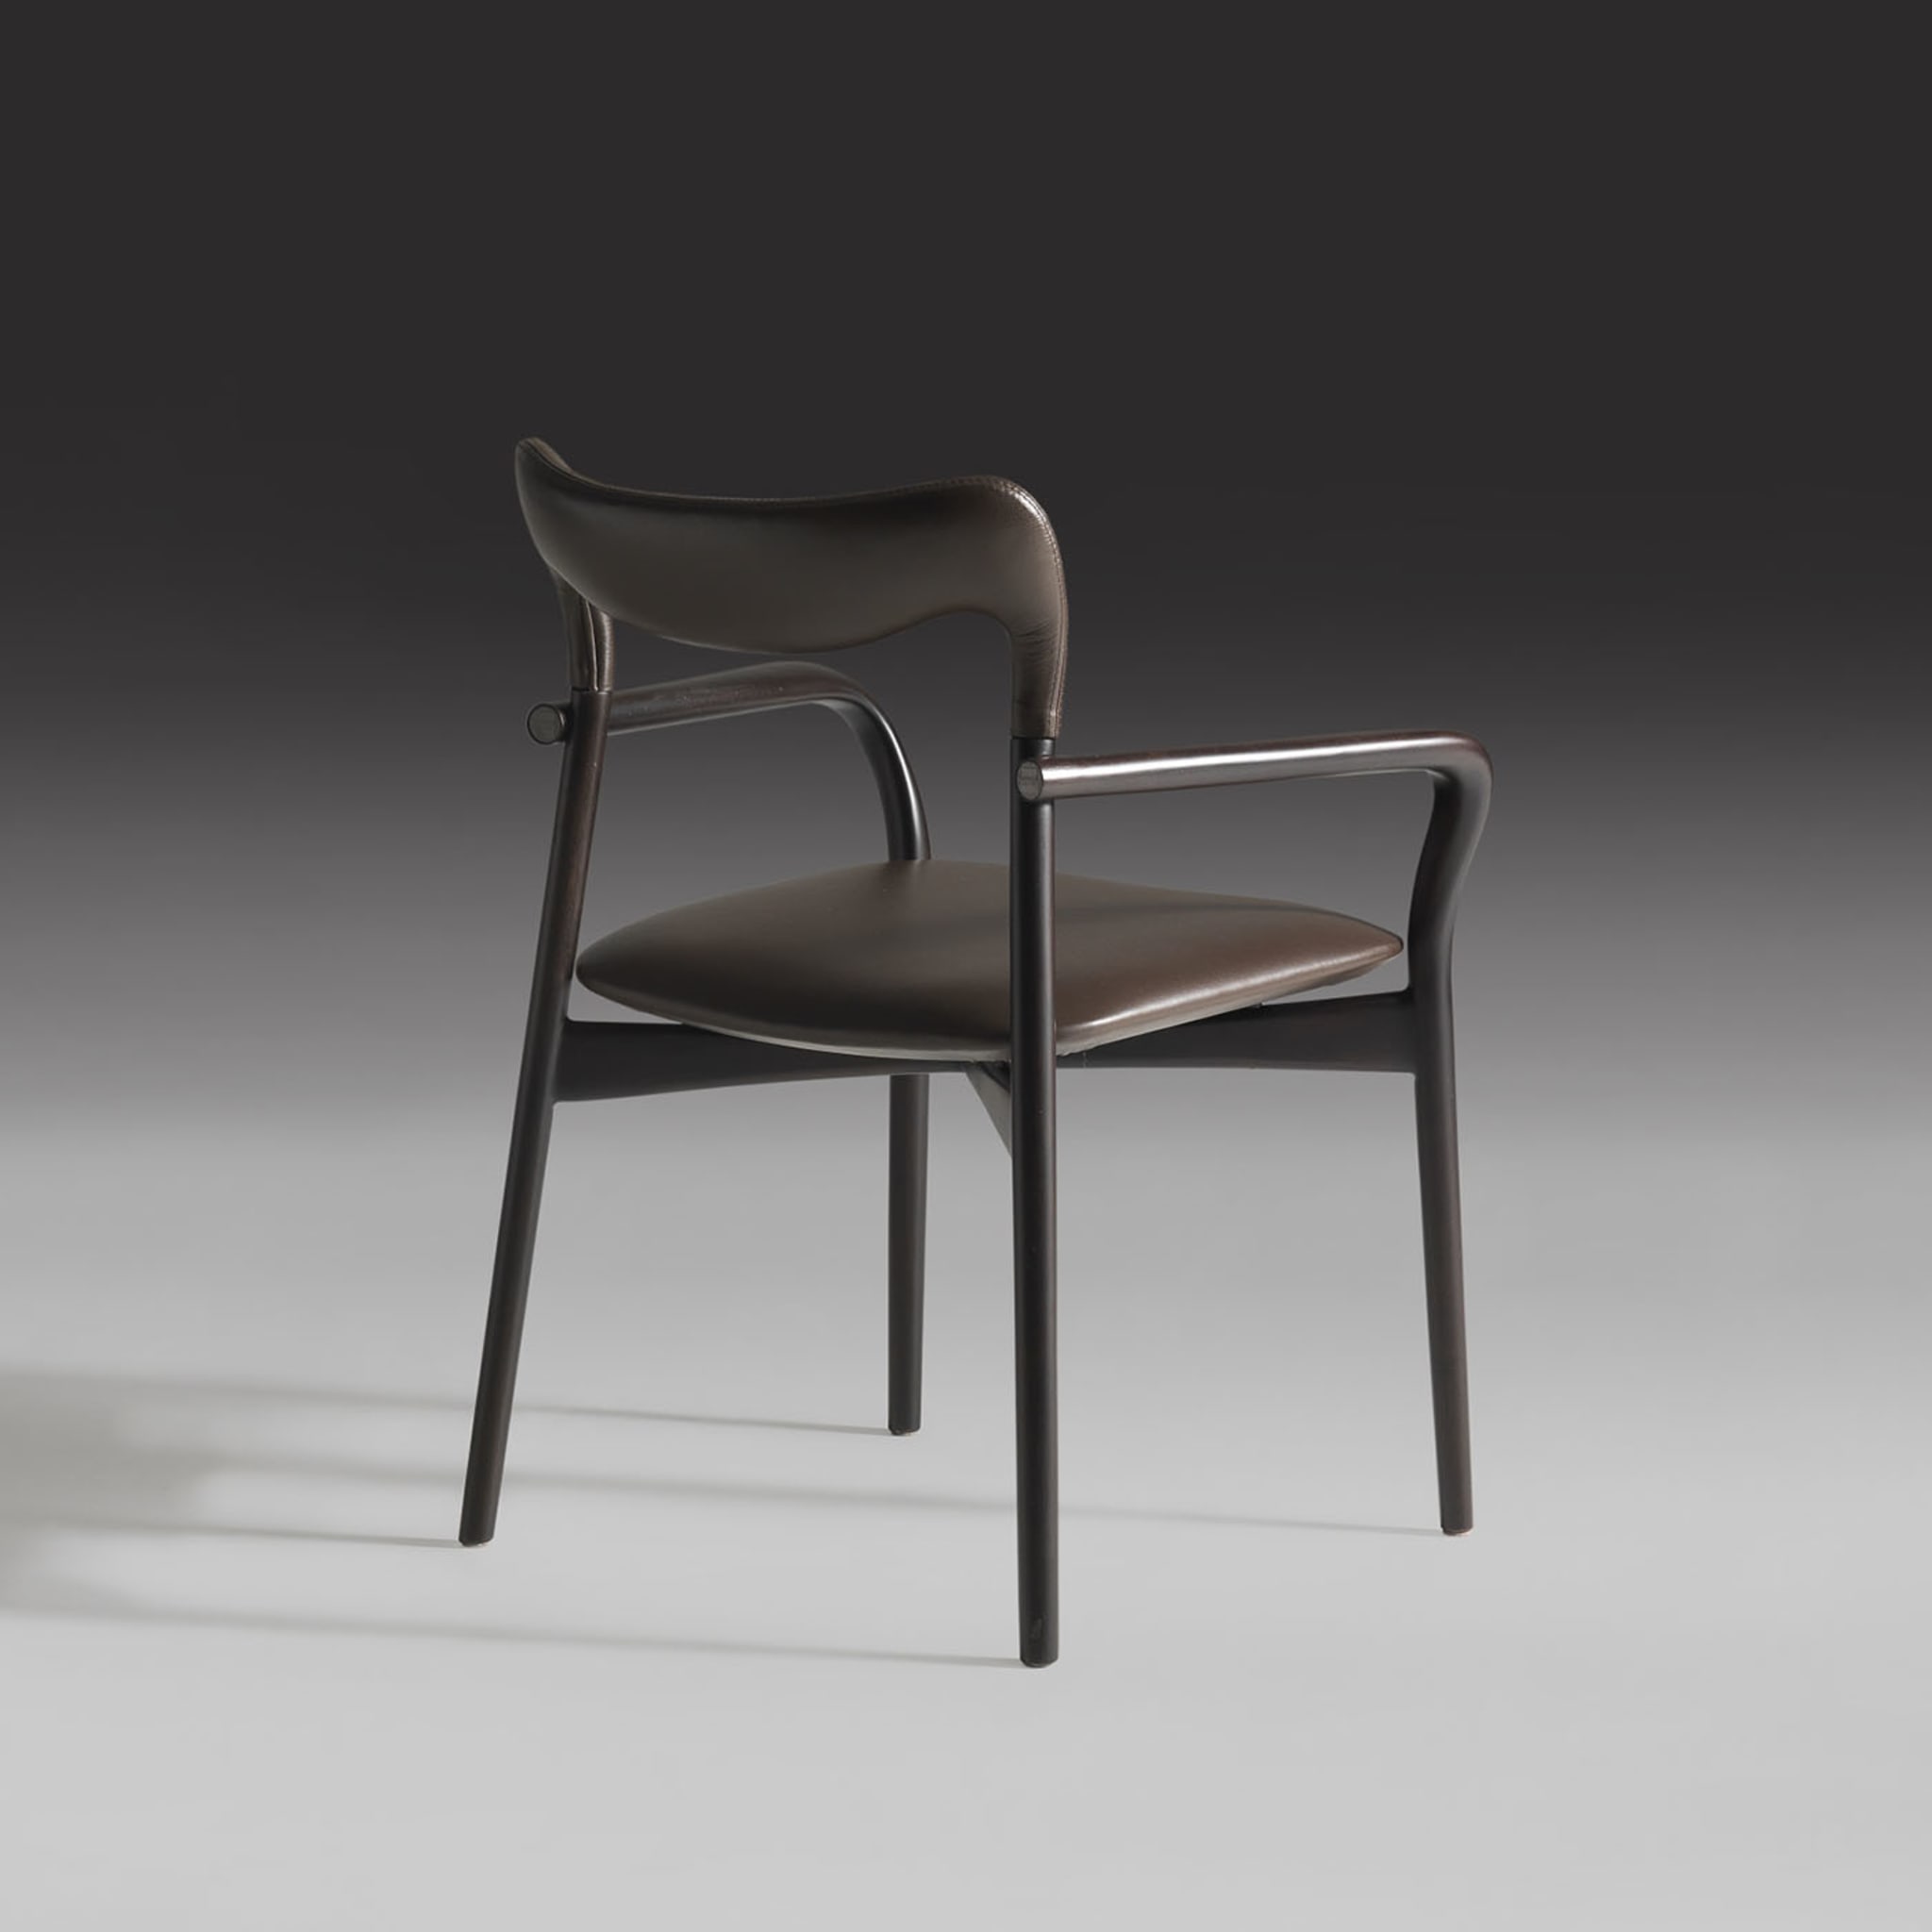 Achille Dark Leather Chair - Alternative view 1